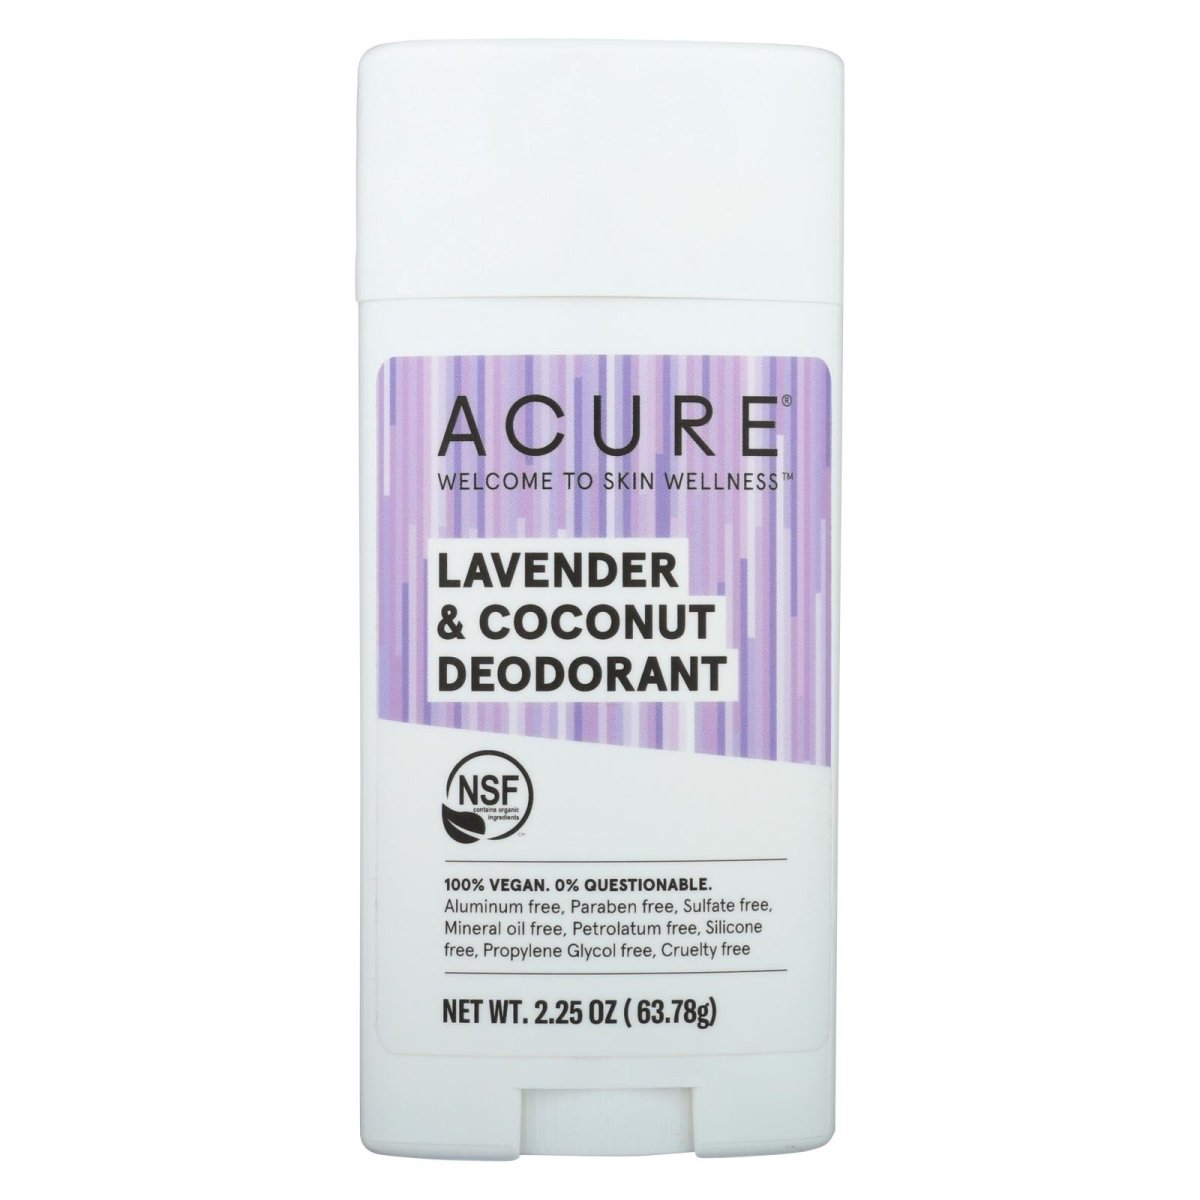 2328219 2.25 Oz Lavender & Coconut Deodorant